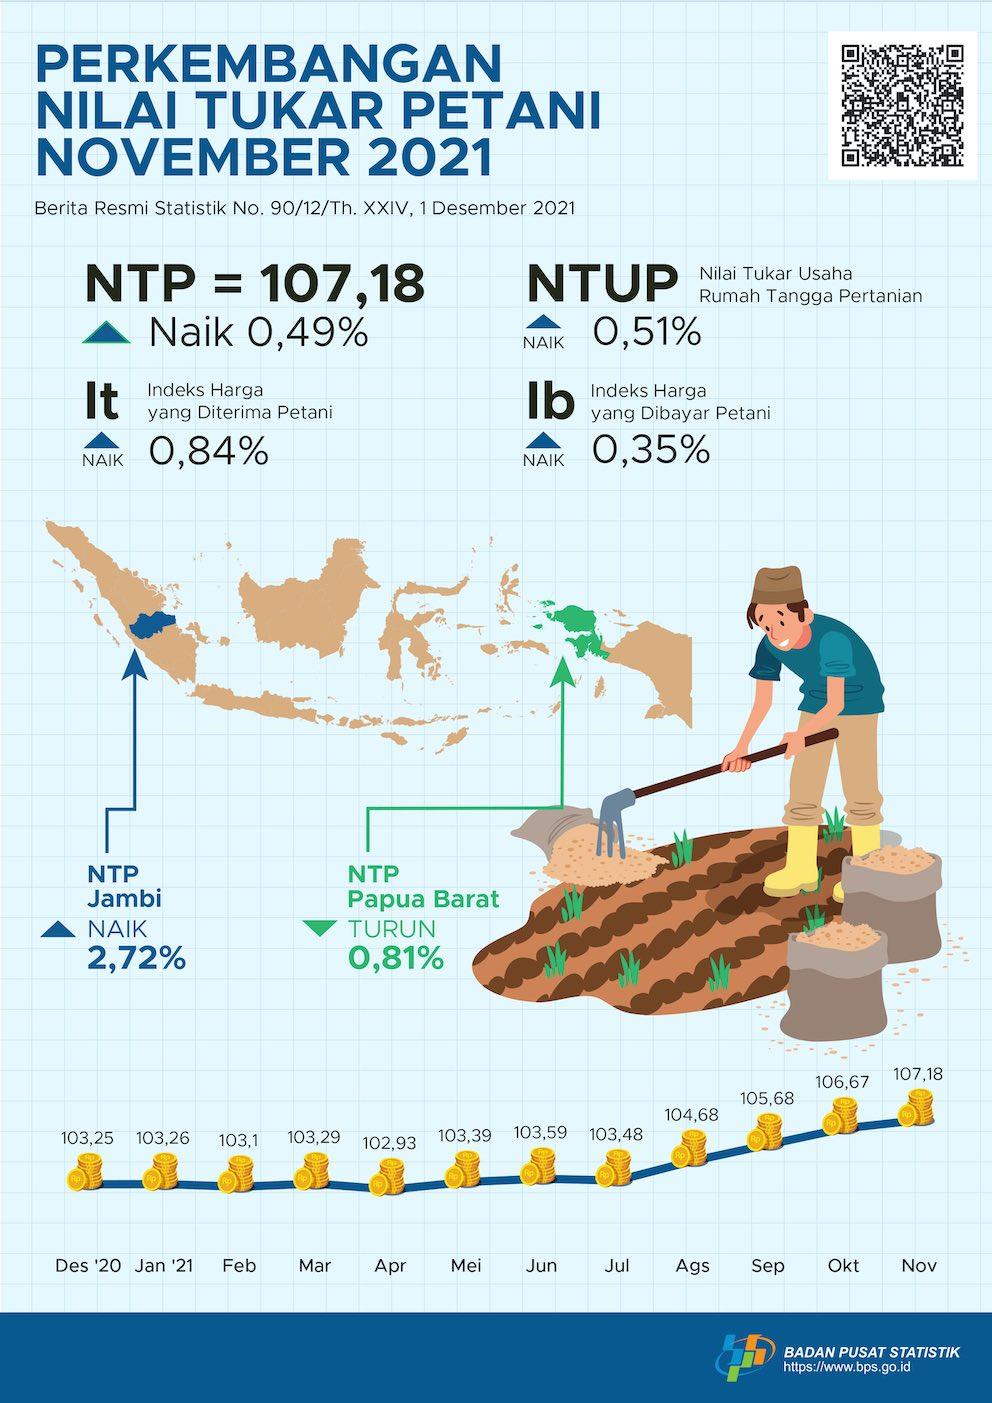 Nilai Tukar Petani (NTP) November 2021 sebesar 107,18 atau naik 0,49 persen